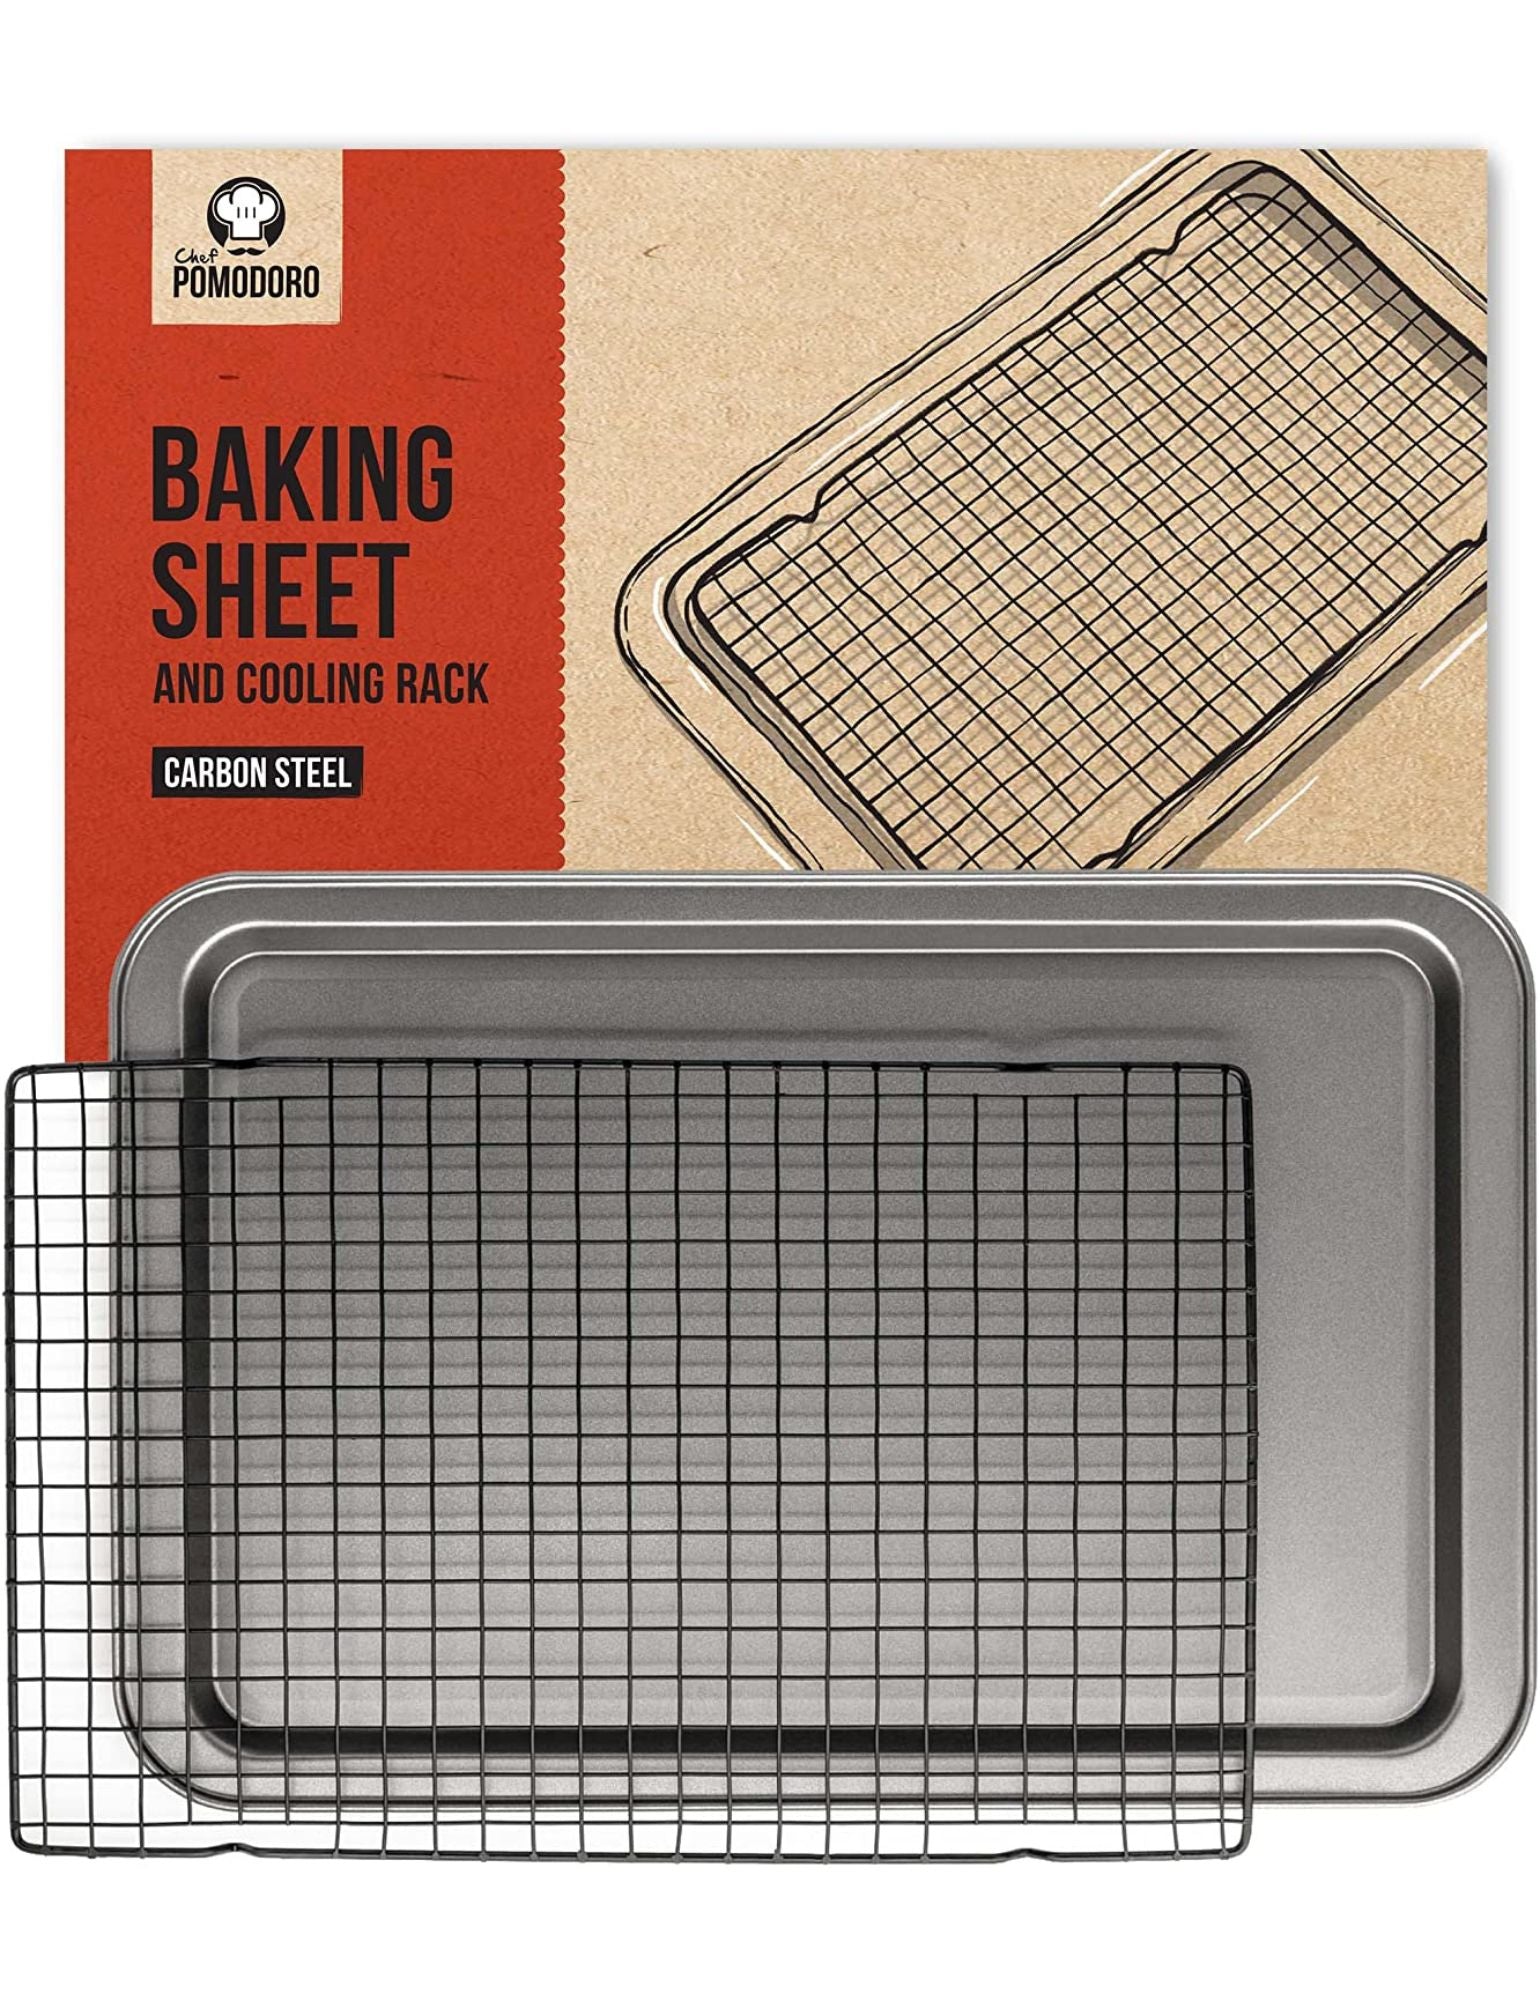 Rectangular Baking Sheet 15 x 10.6 Case Pack 24